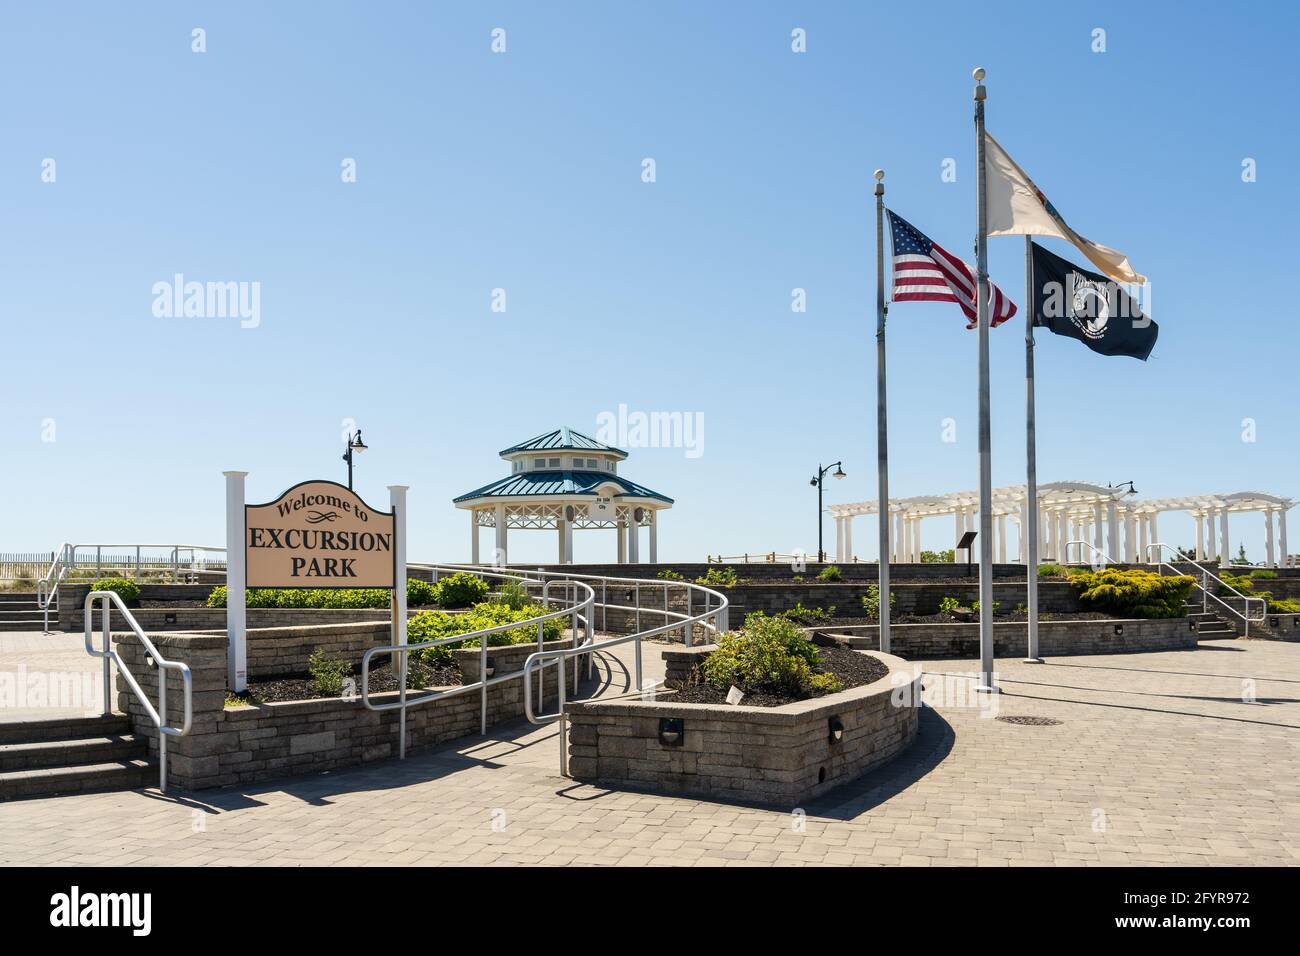 Sea Isle City, NJ - 13. Mai 2021: Willkommen zum Exkursion Park Schild an der Promenade mit Fahnen und dem Pavillon. Sowie eine Rampe für Behinderte. Stockfoto